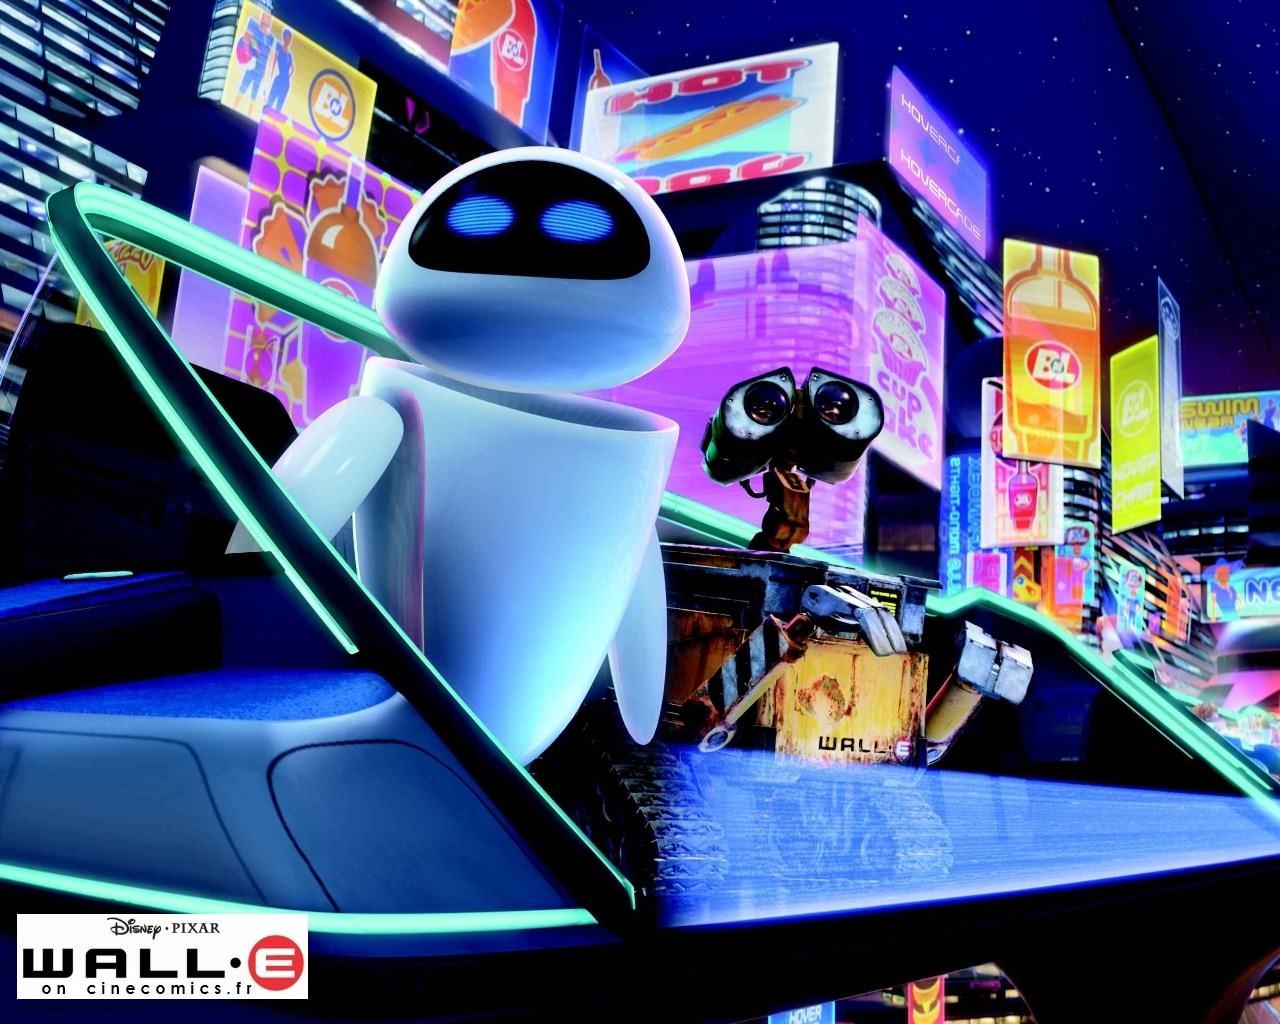  Wall E Wall-E le nouveau robot de Pixar